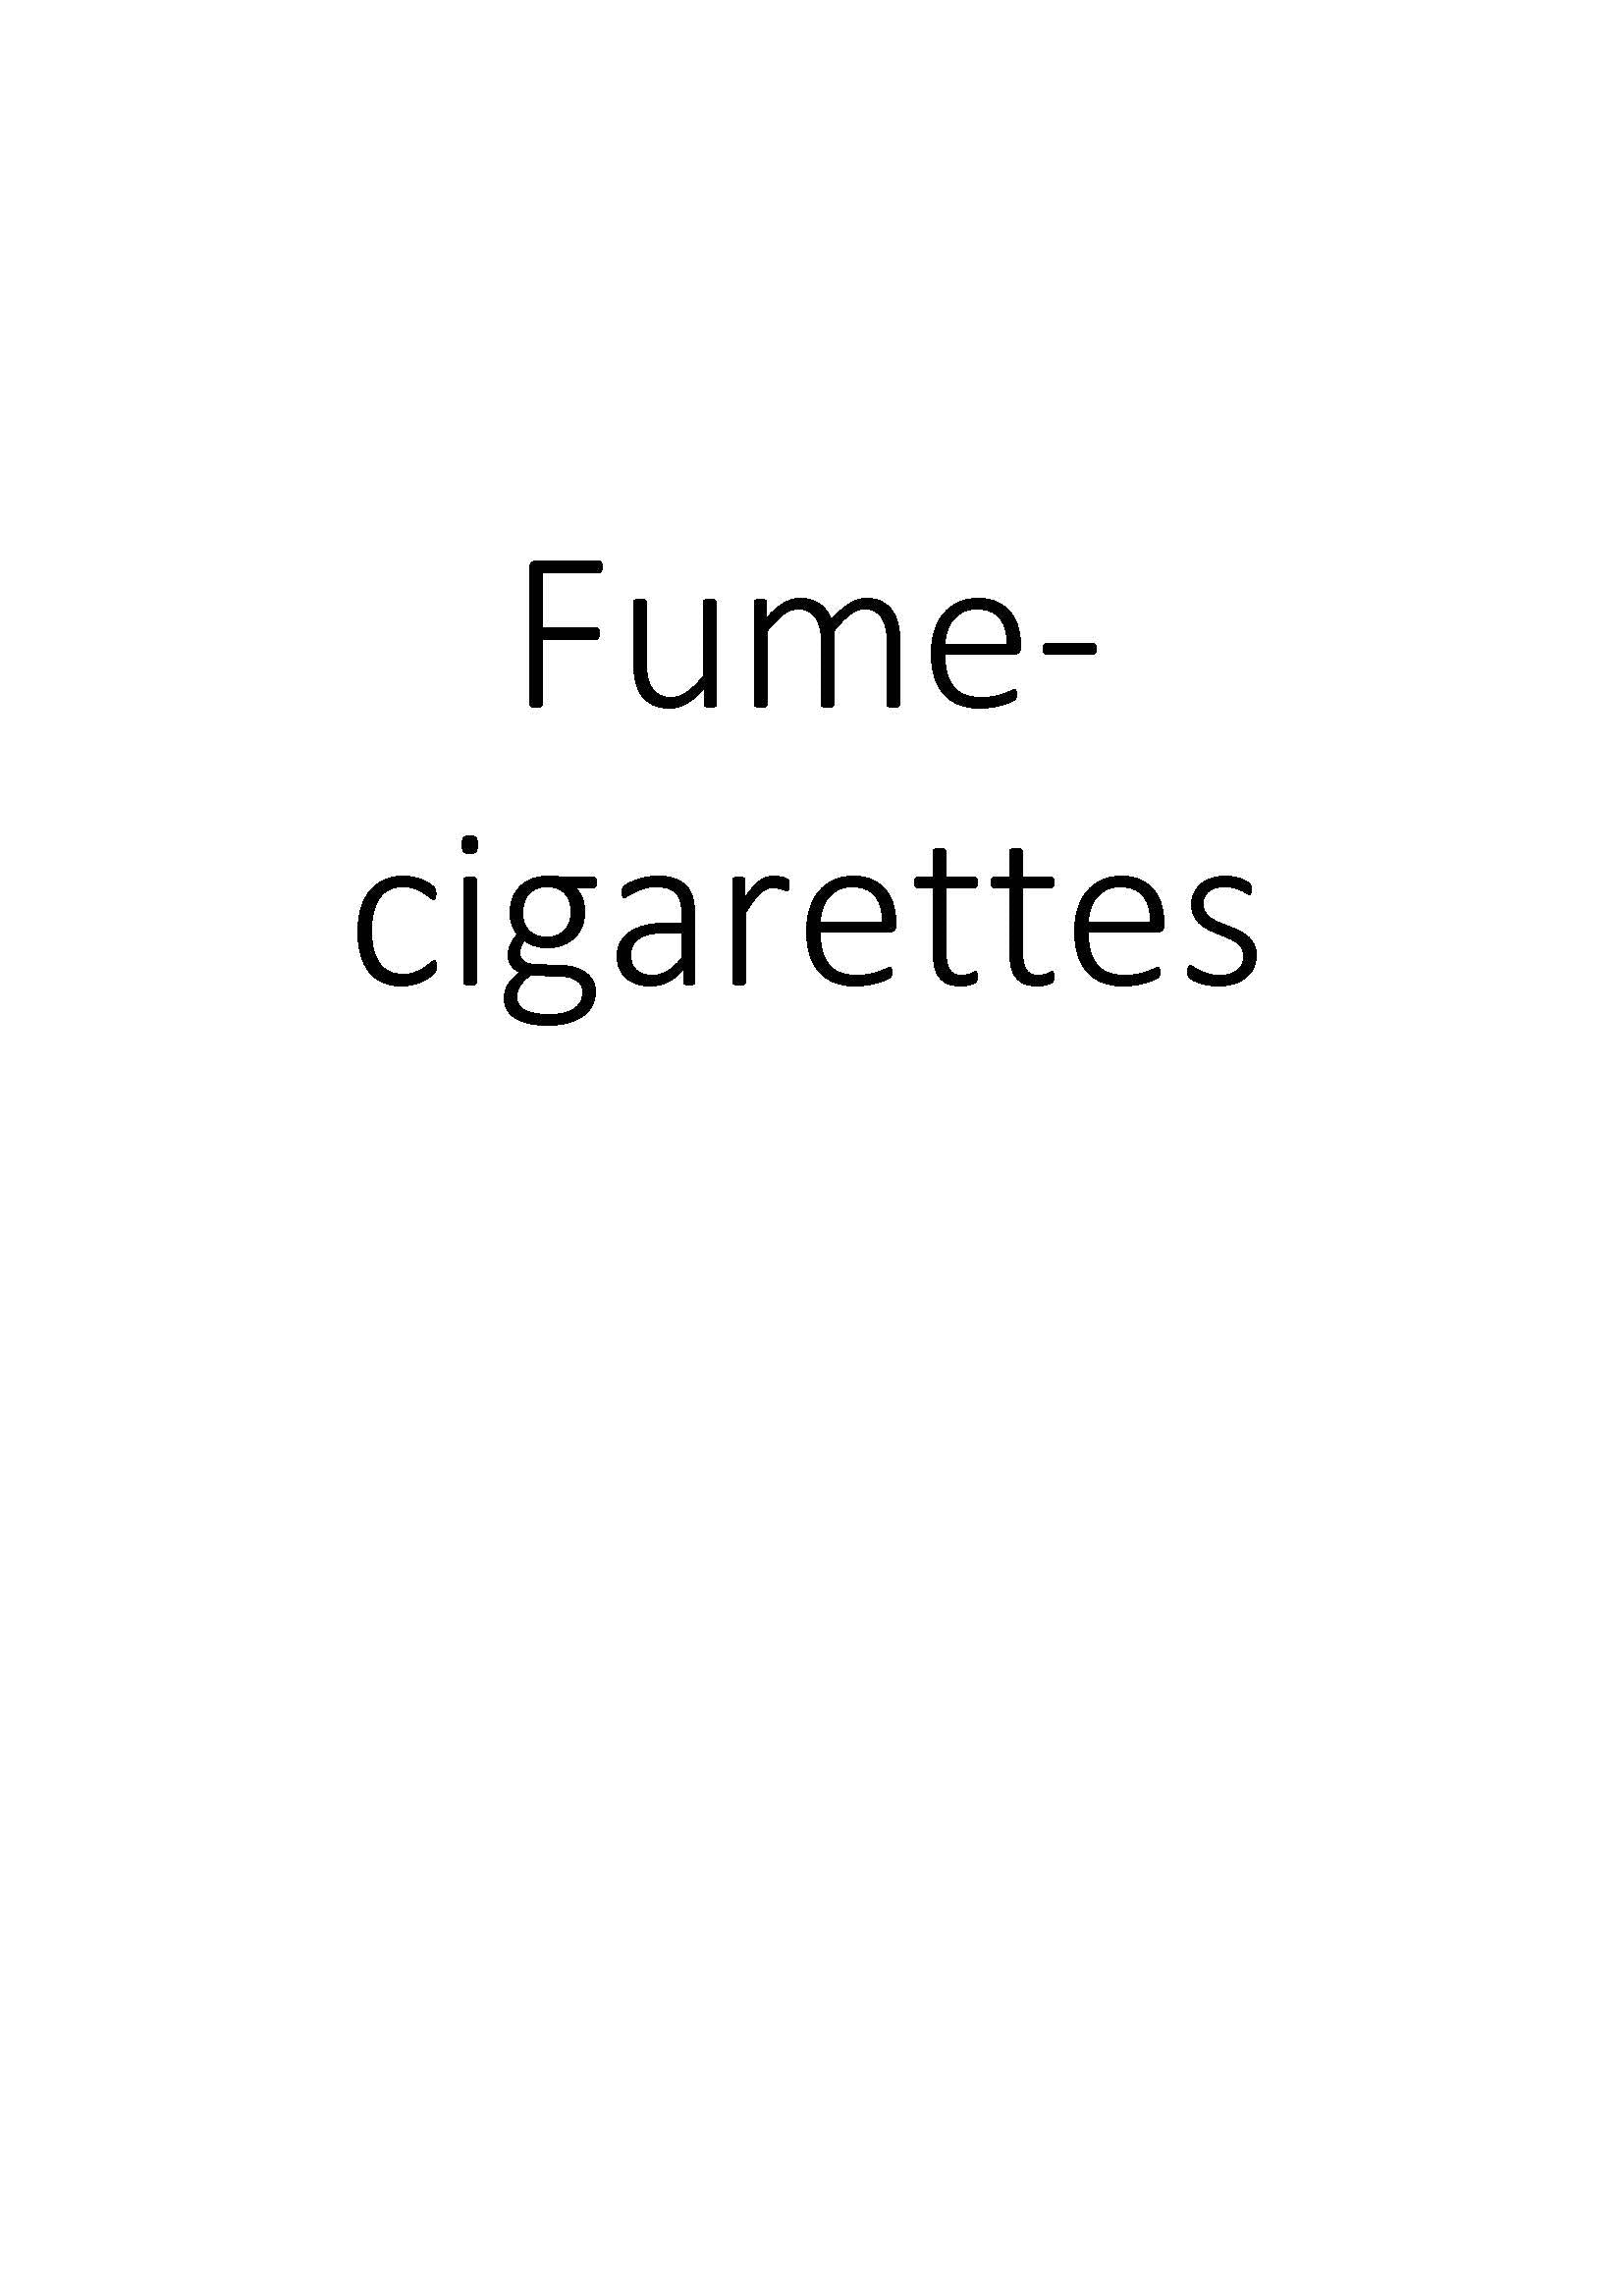 Fume-cigarettes clicktofournisseur.com